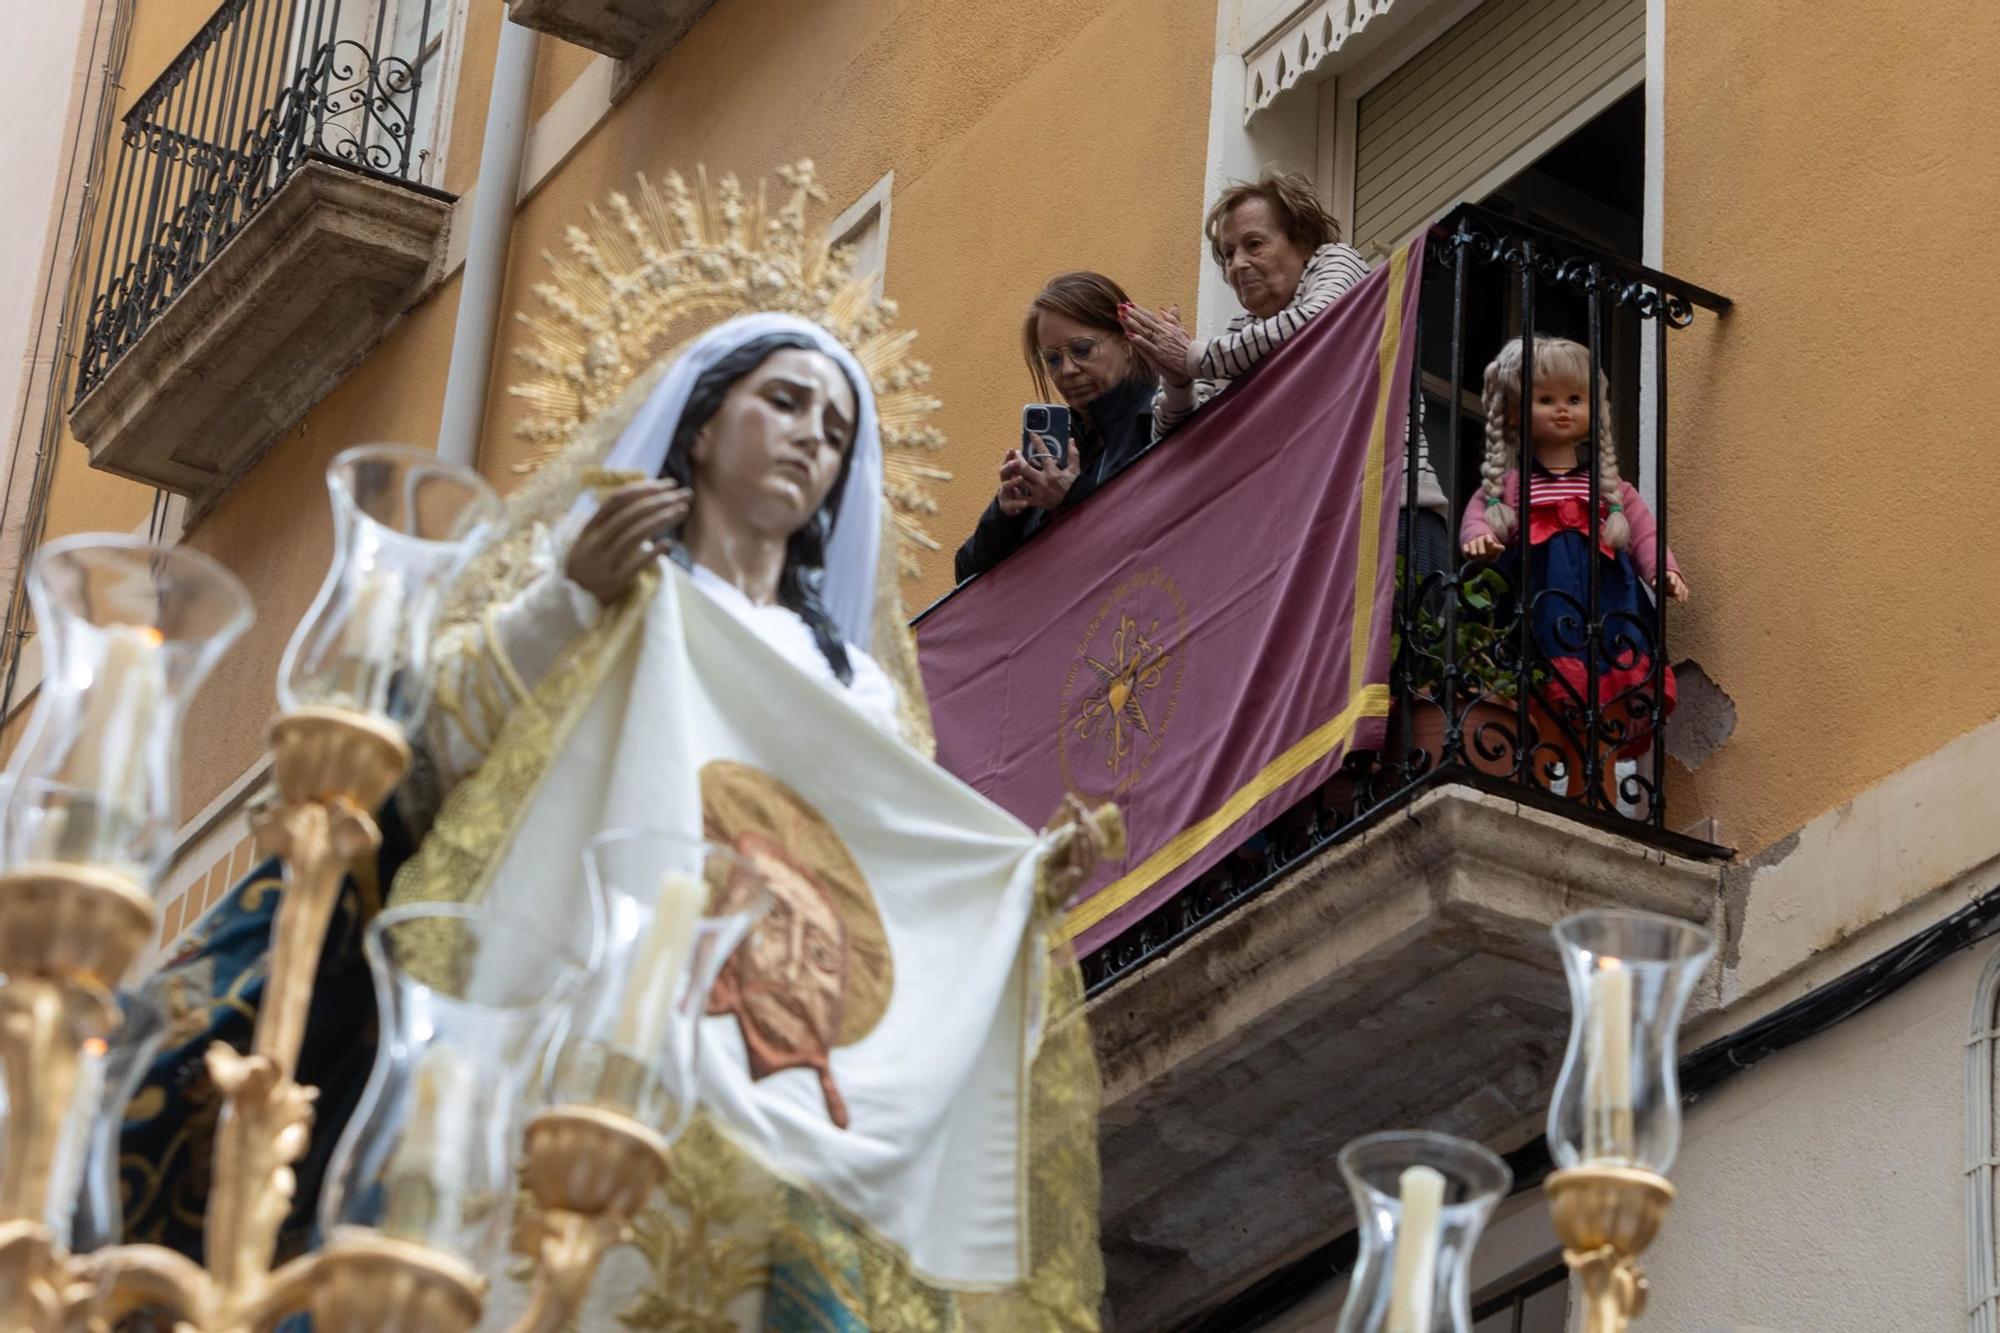 Miles de personas abarrotan el centro de la ciudad de Alicante para celebrar el Domingo de Ramos